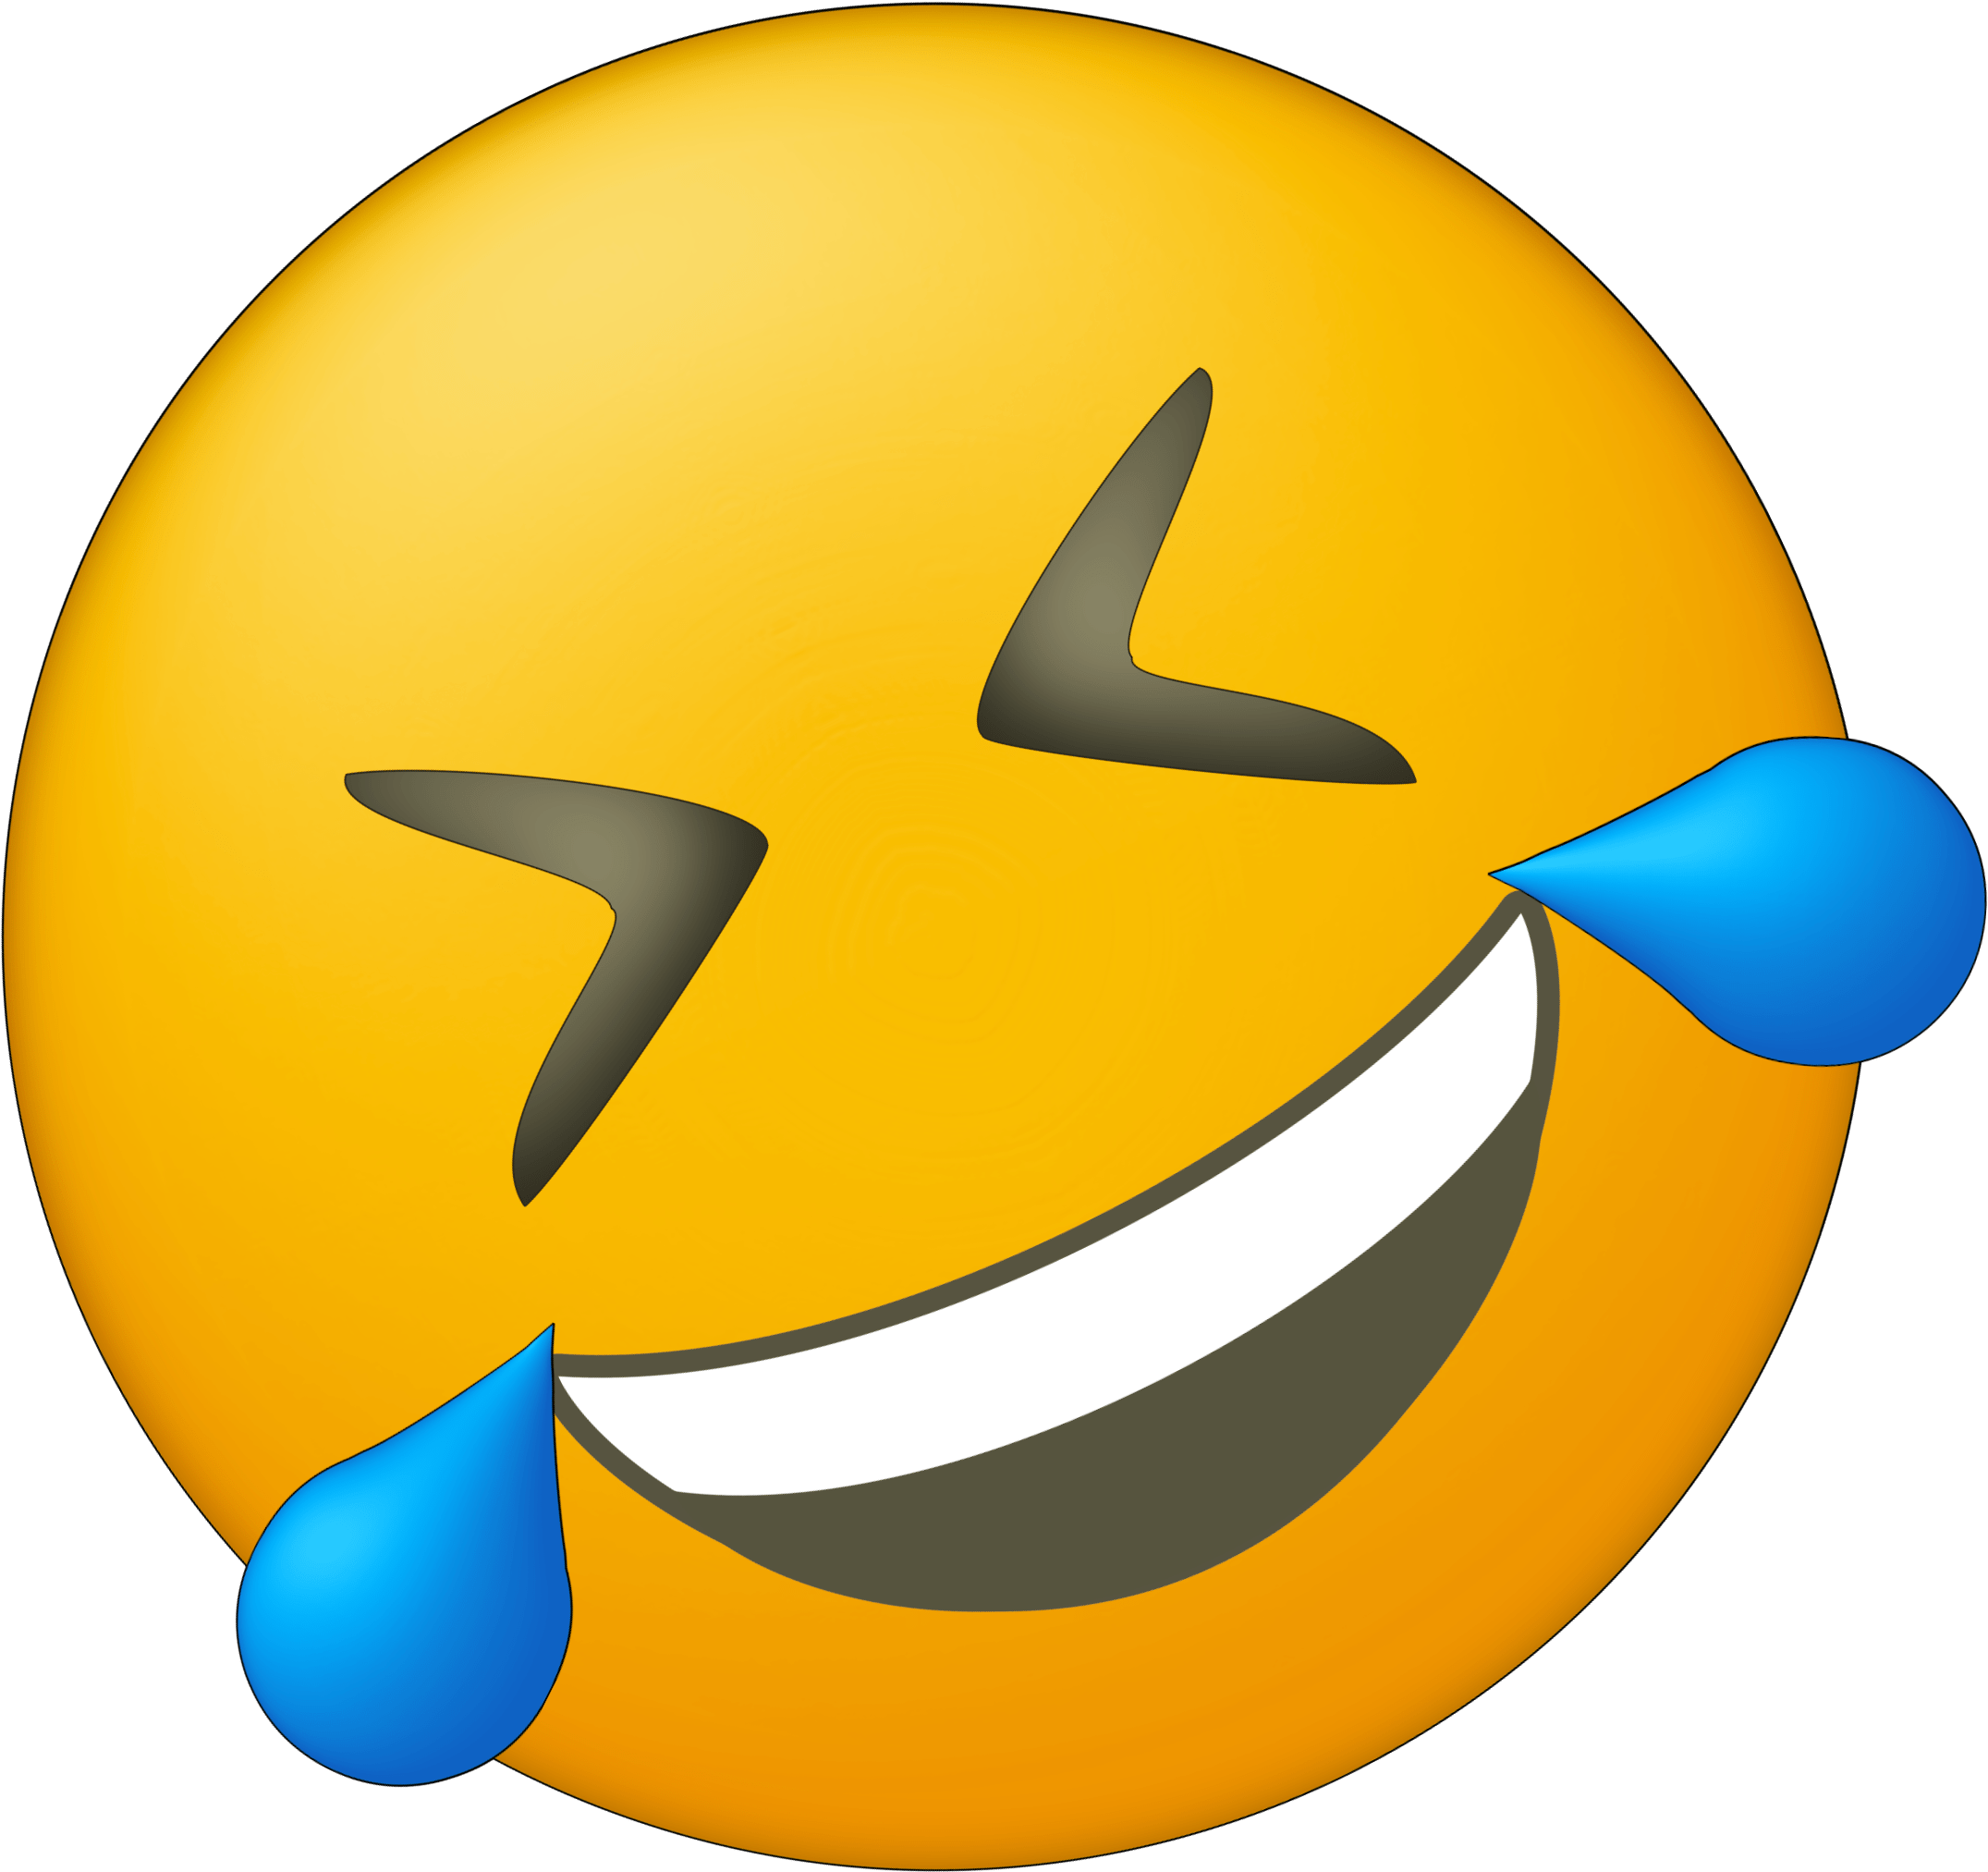 Laughing Crying Emoji Background PNG Image